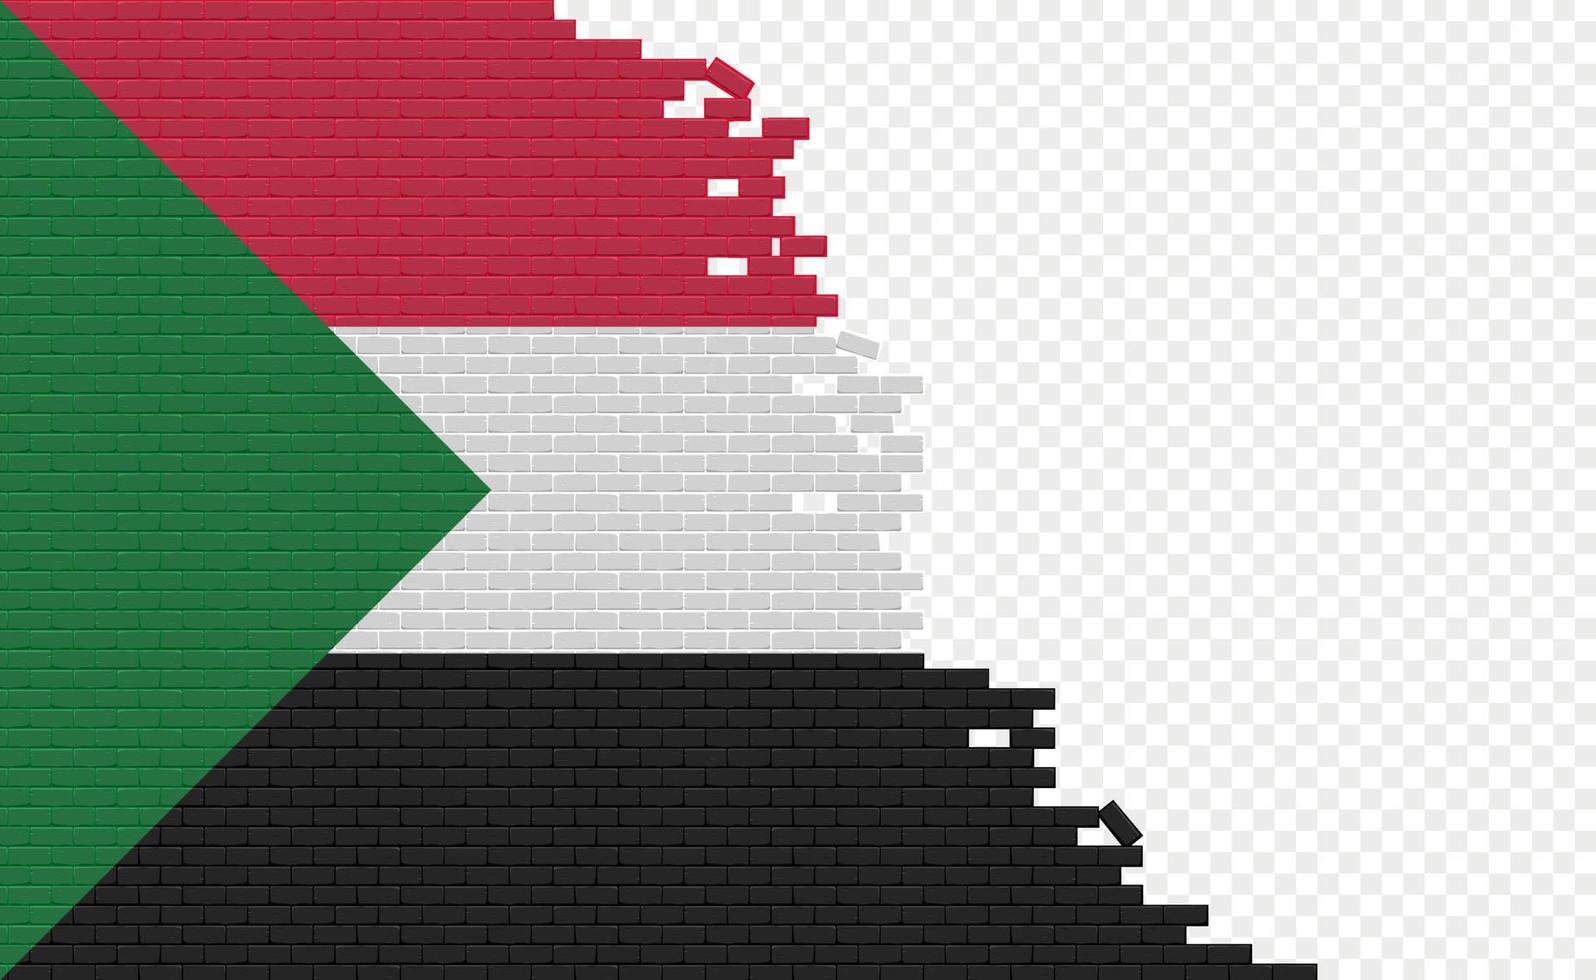 bandera de sudán en la pared de ladrillos rotos. campo de bandera vacío de otro país. comparación de países. fácil edición y vector en grupos.